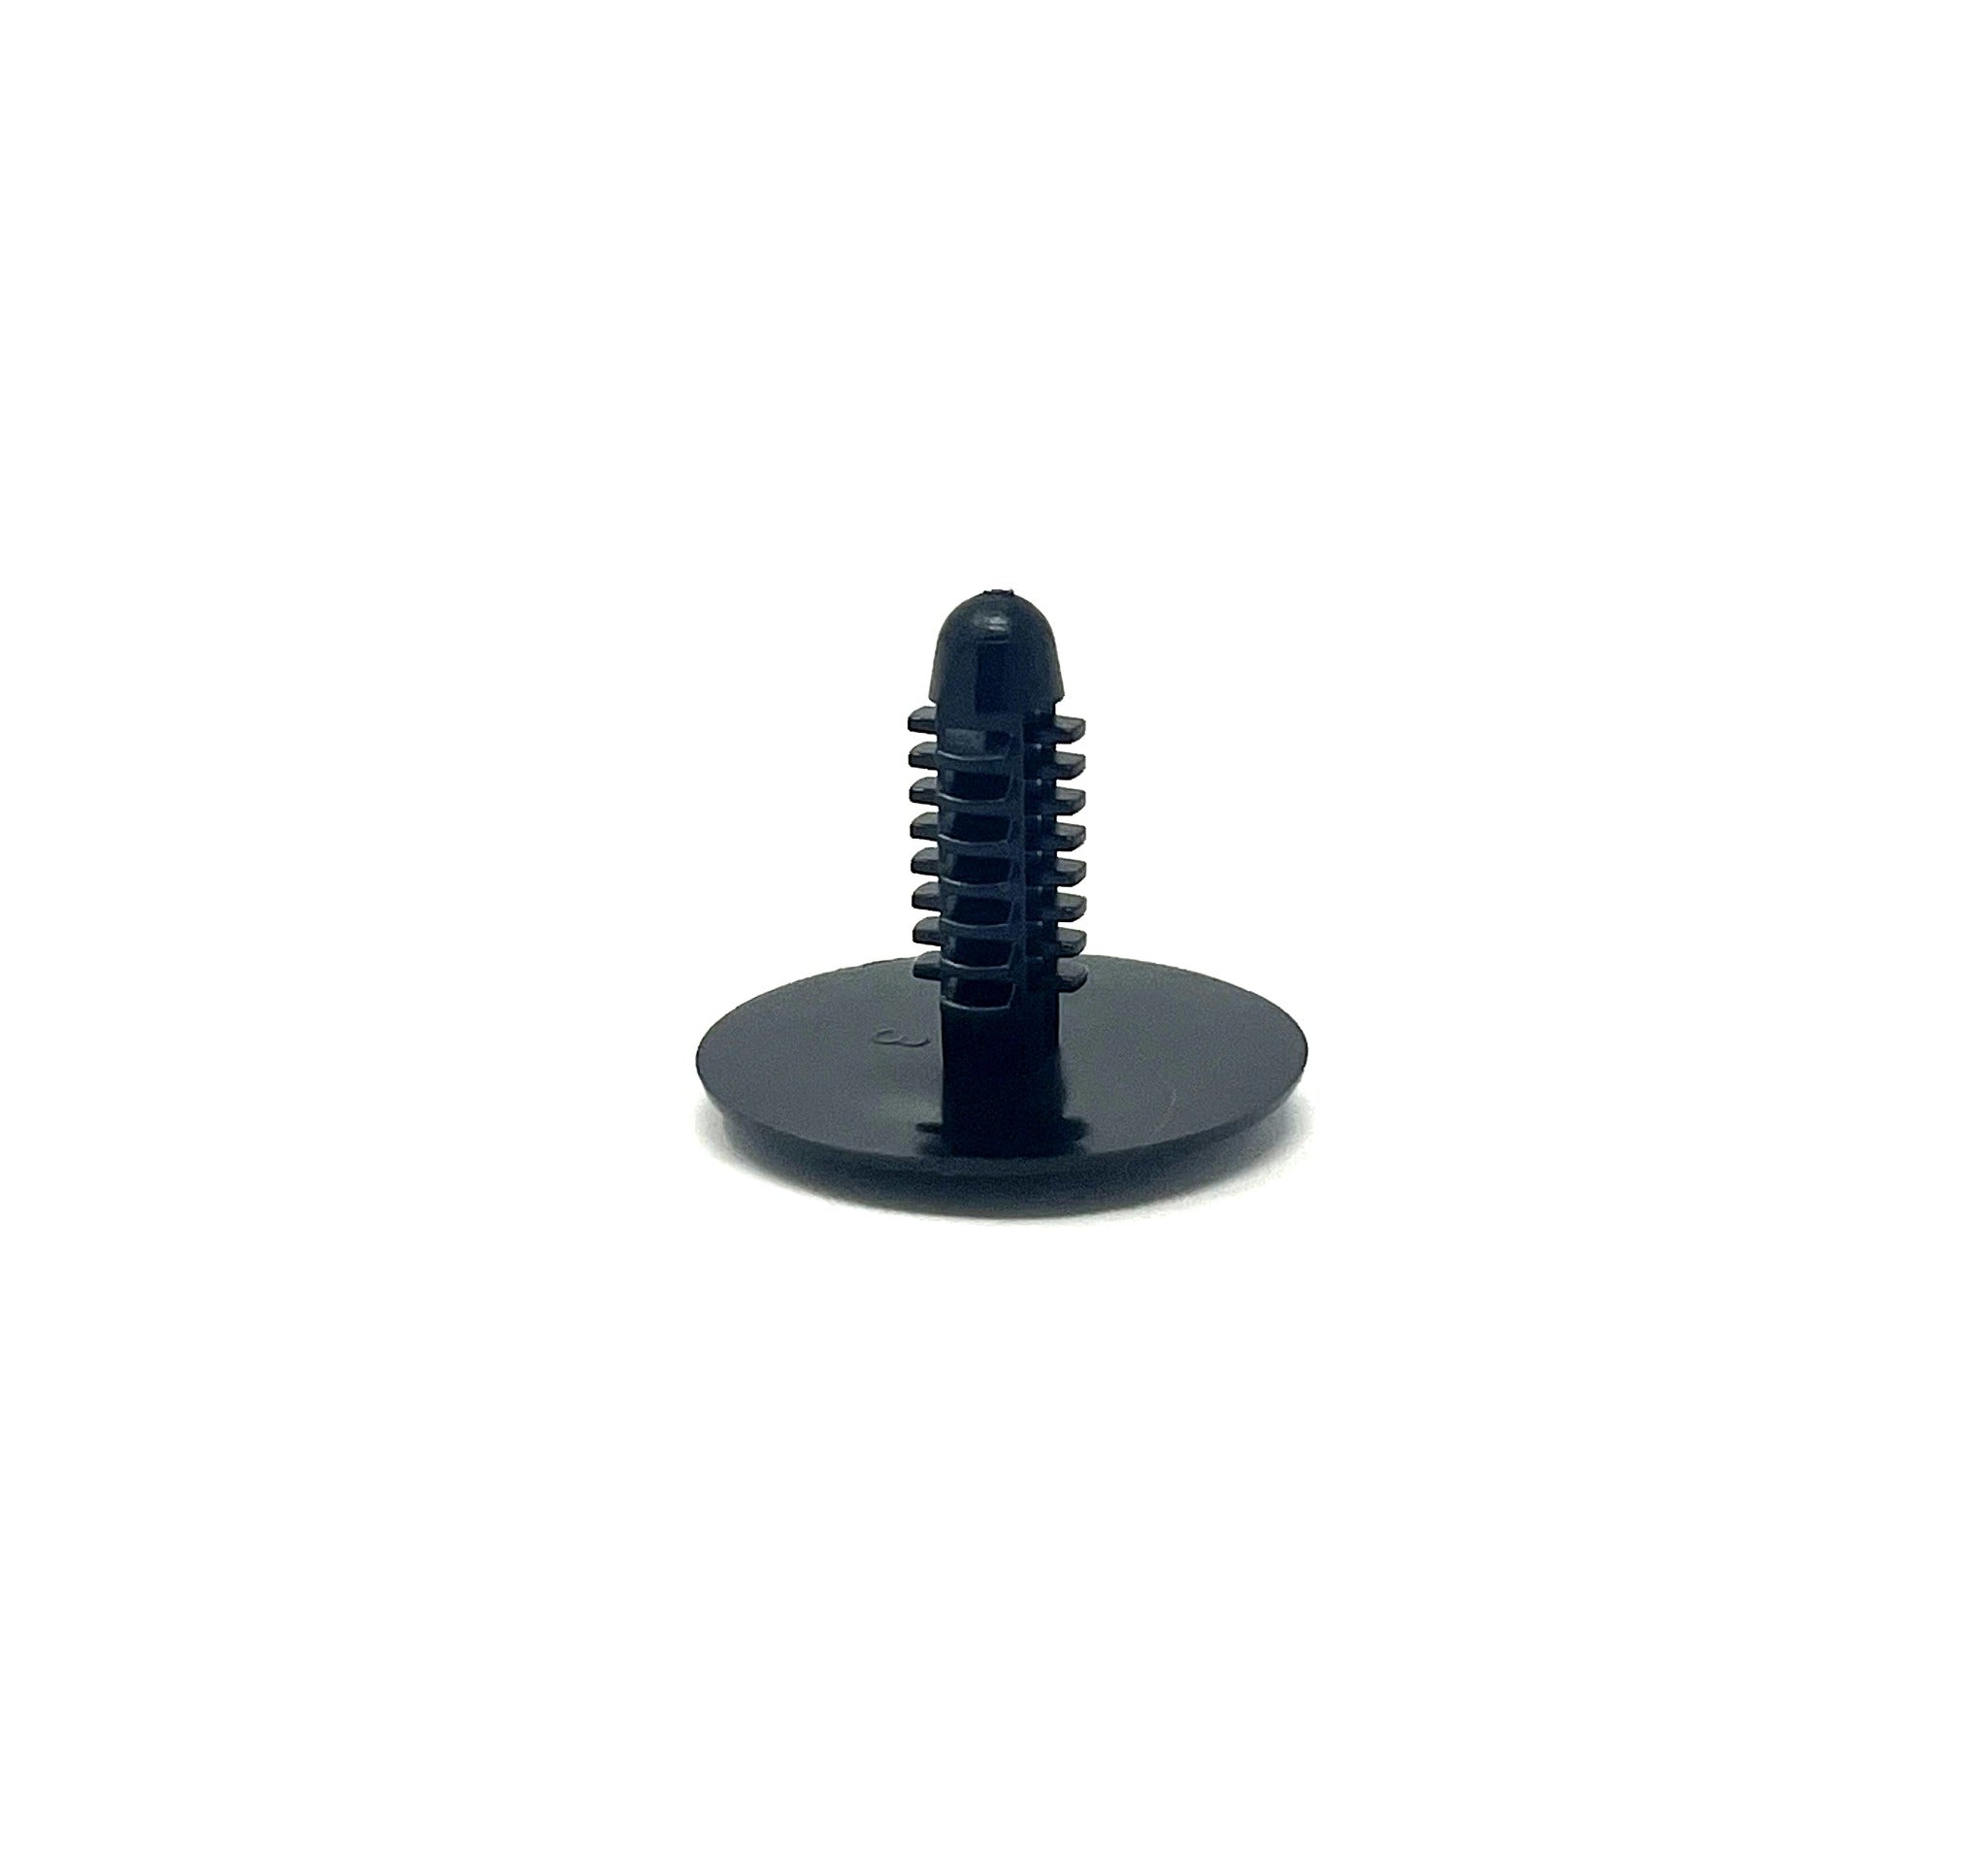 Black Universal Nylon Fascia Panel Retainer Head Diameter 25mm, Stem Diameter 7.5mm, Stem Length 20mm Chrysler # 6501067 (Pack of 50)